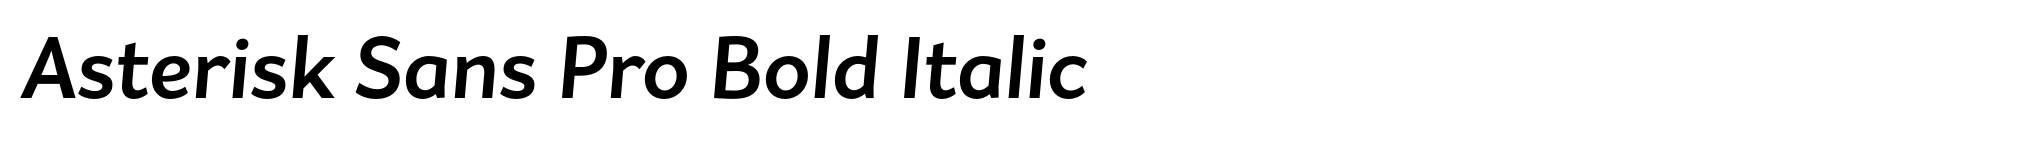 Asterisk Sans Pro Bold Italic image